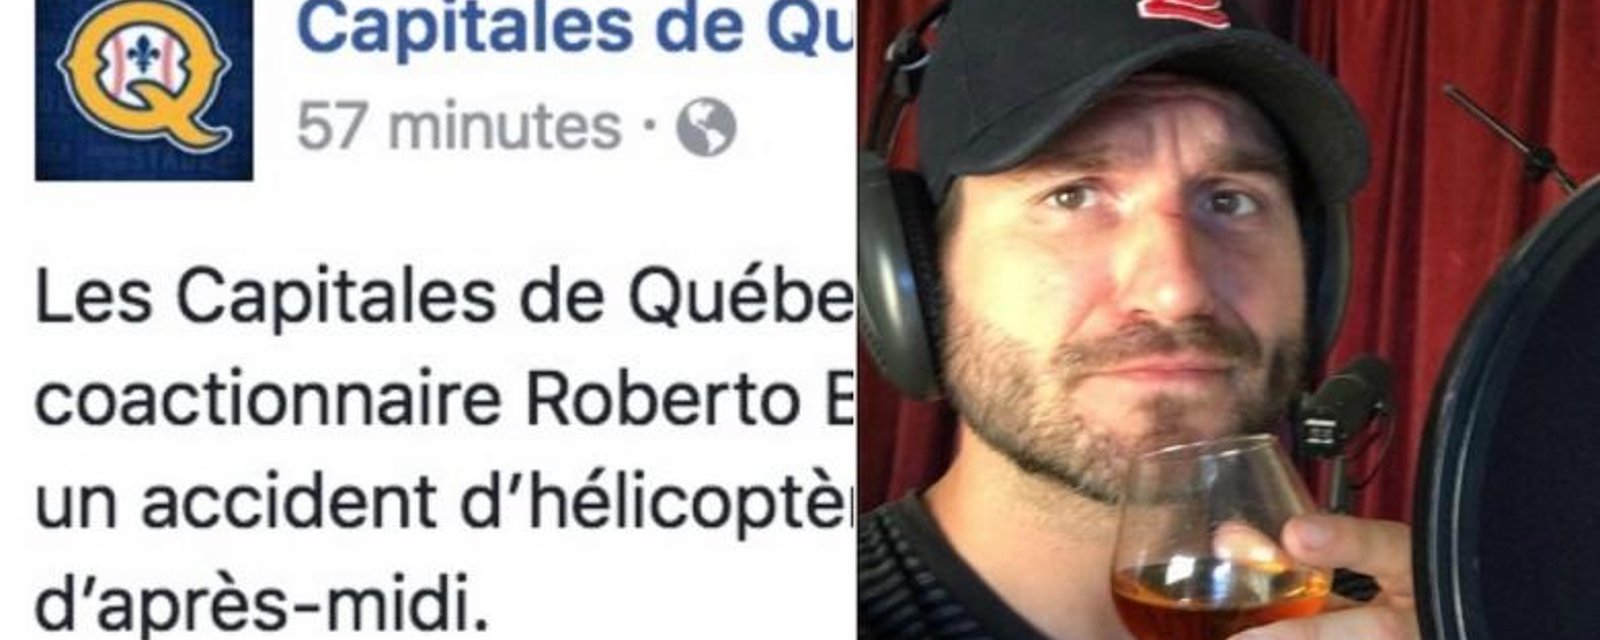 Suite au décès de Bob Bissonette, les Capitales de Québec publient un message sur Facebook